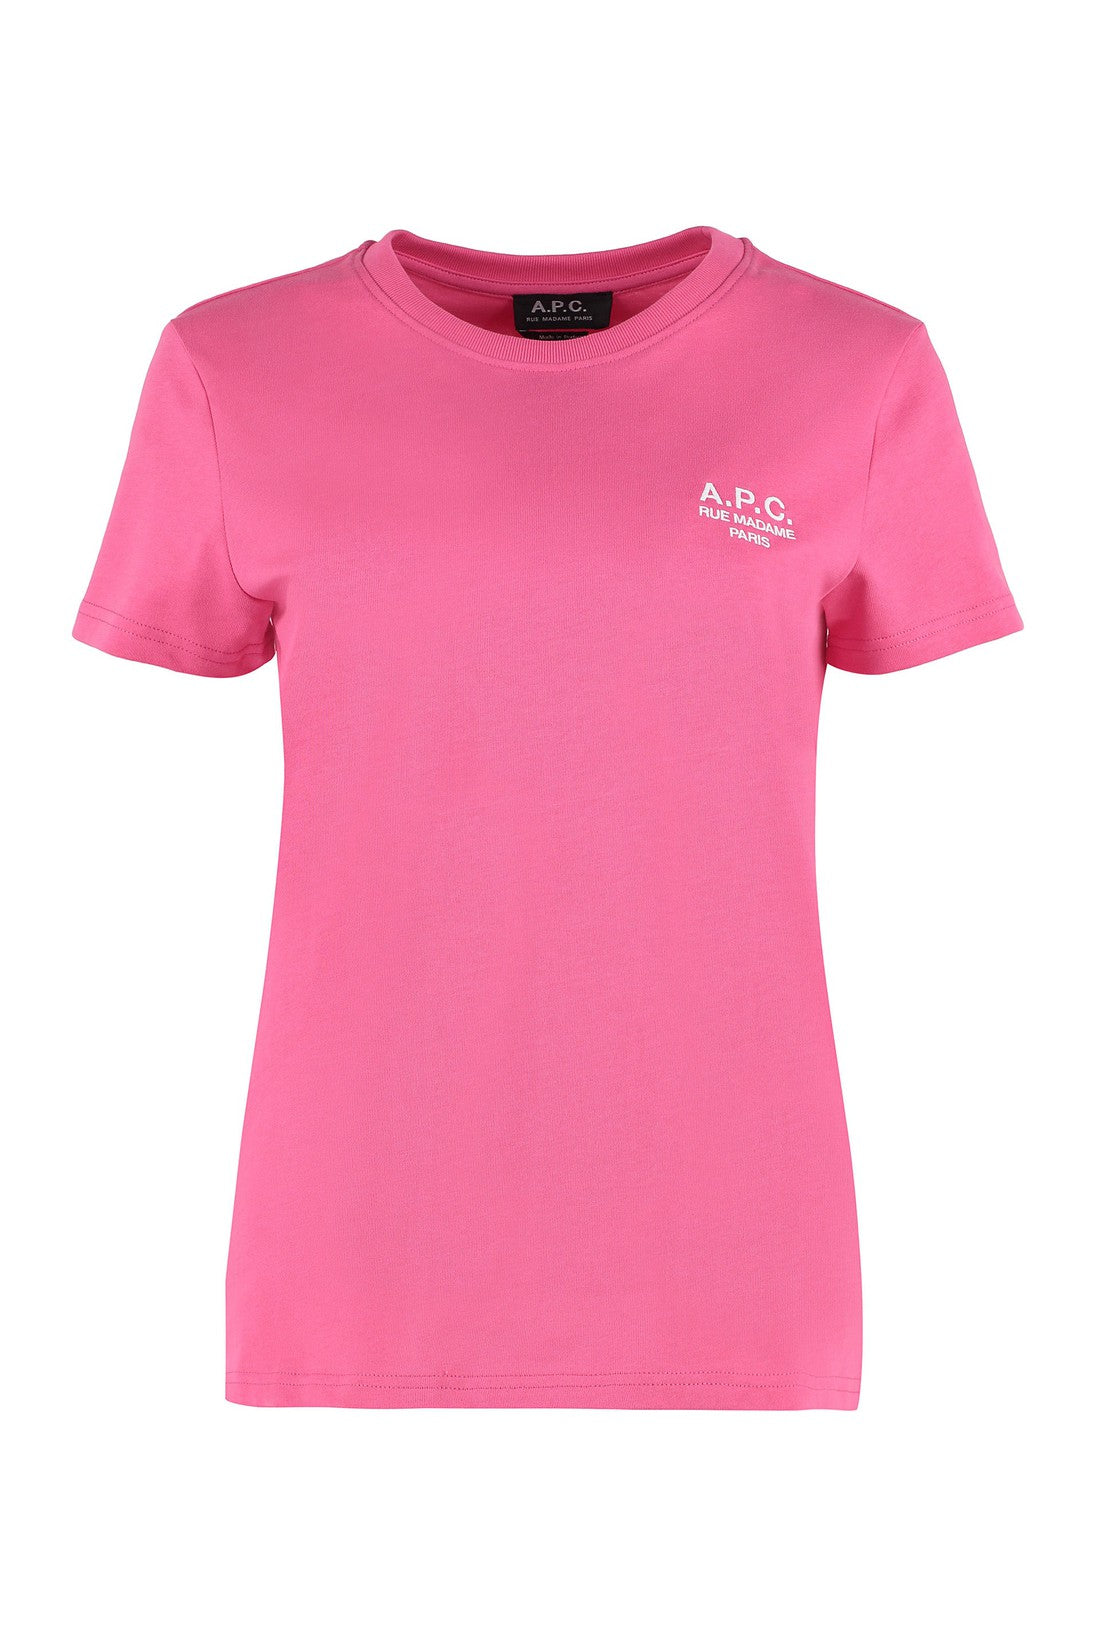 A.P.C.-OUTLET-SALE-New Denise cotton crew-neck T-shirt-ARCHIVIST